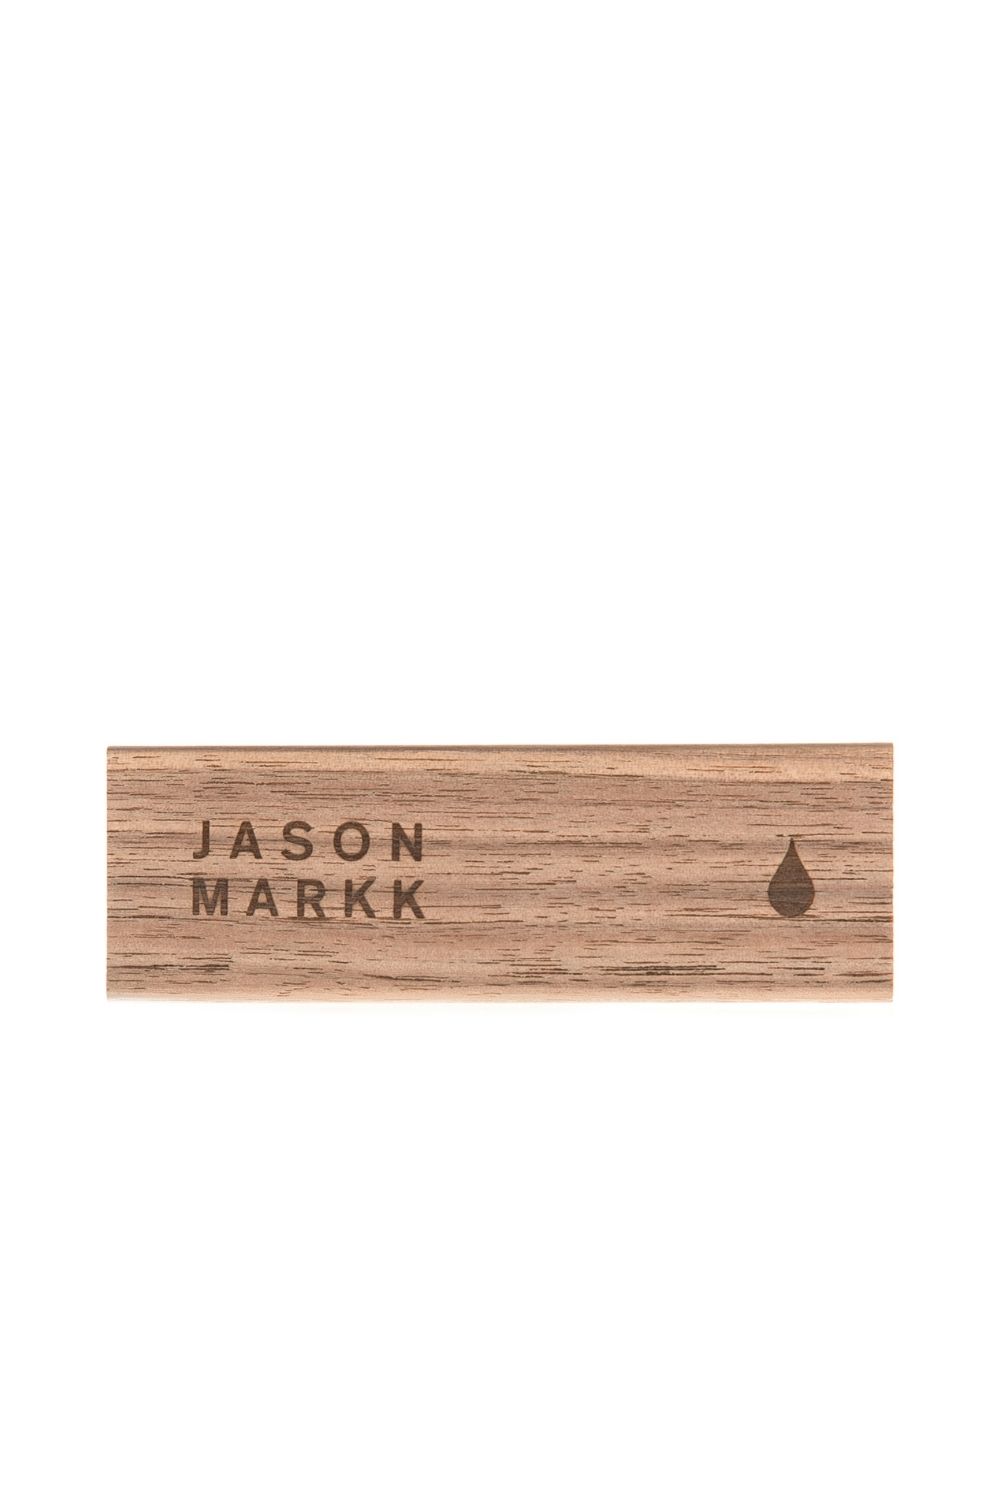 JASON MARKK – Βούρτσα καθαρισμού παπουτσιών Jason Markk PREMIUM SHOE CLEANER BRUSH 1549491.0-0000